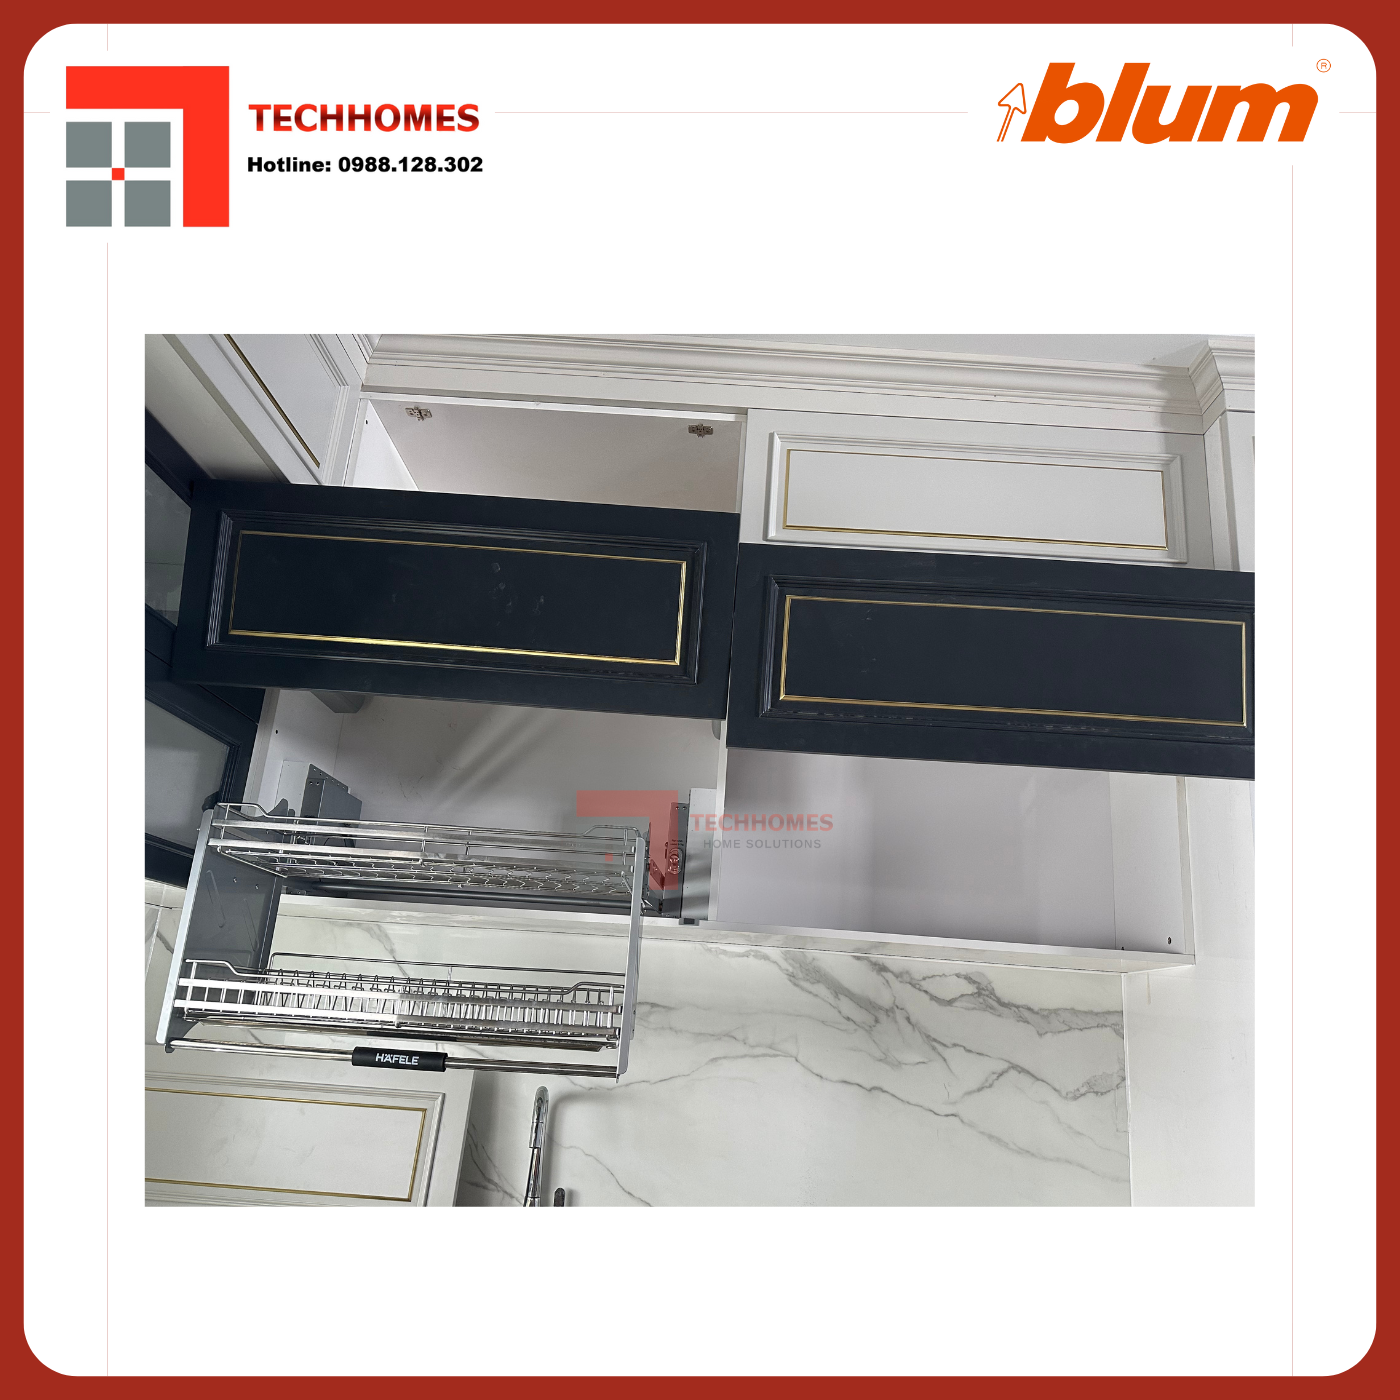 TAY NÂNG BLUM HF28 trọn bộ tay nâng Blum f28 nhập khẩu chính hãng Áo 